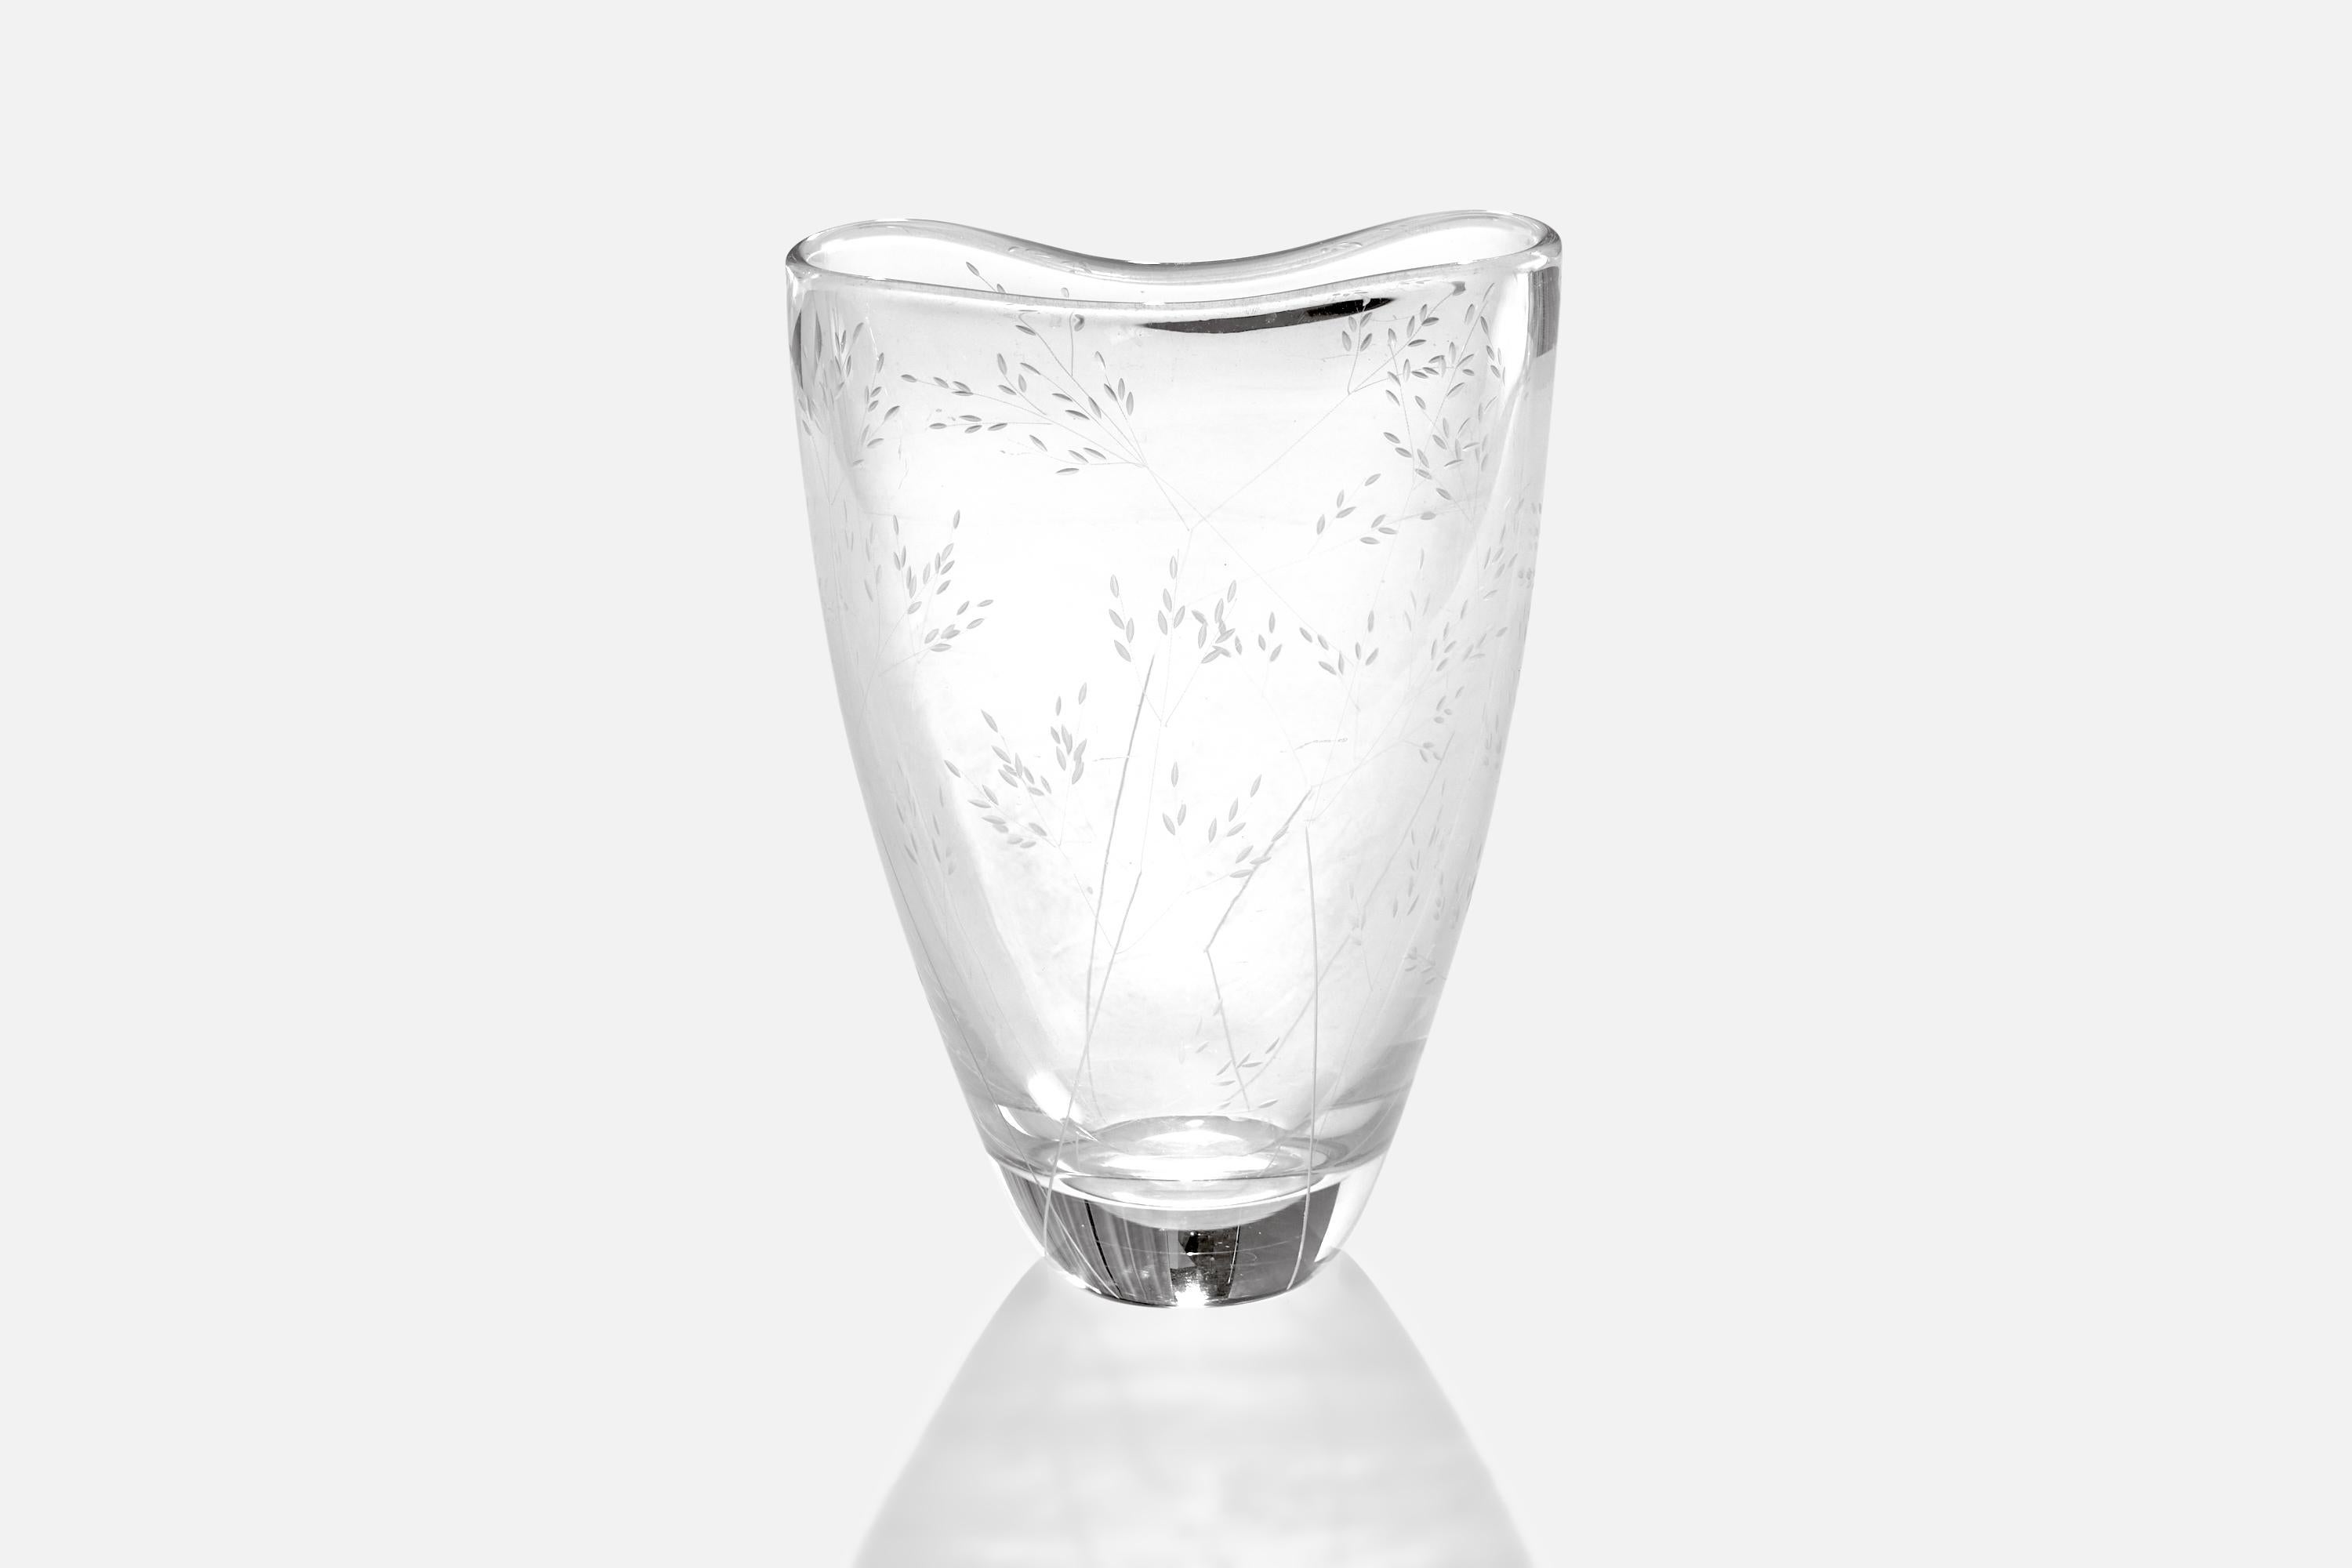 Vase en verre soufflé à décor gravé, conçu par Vicke Lindstrand et produit par Kosta Boda, Suède, vers les années 1950.